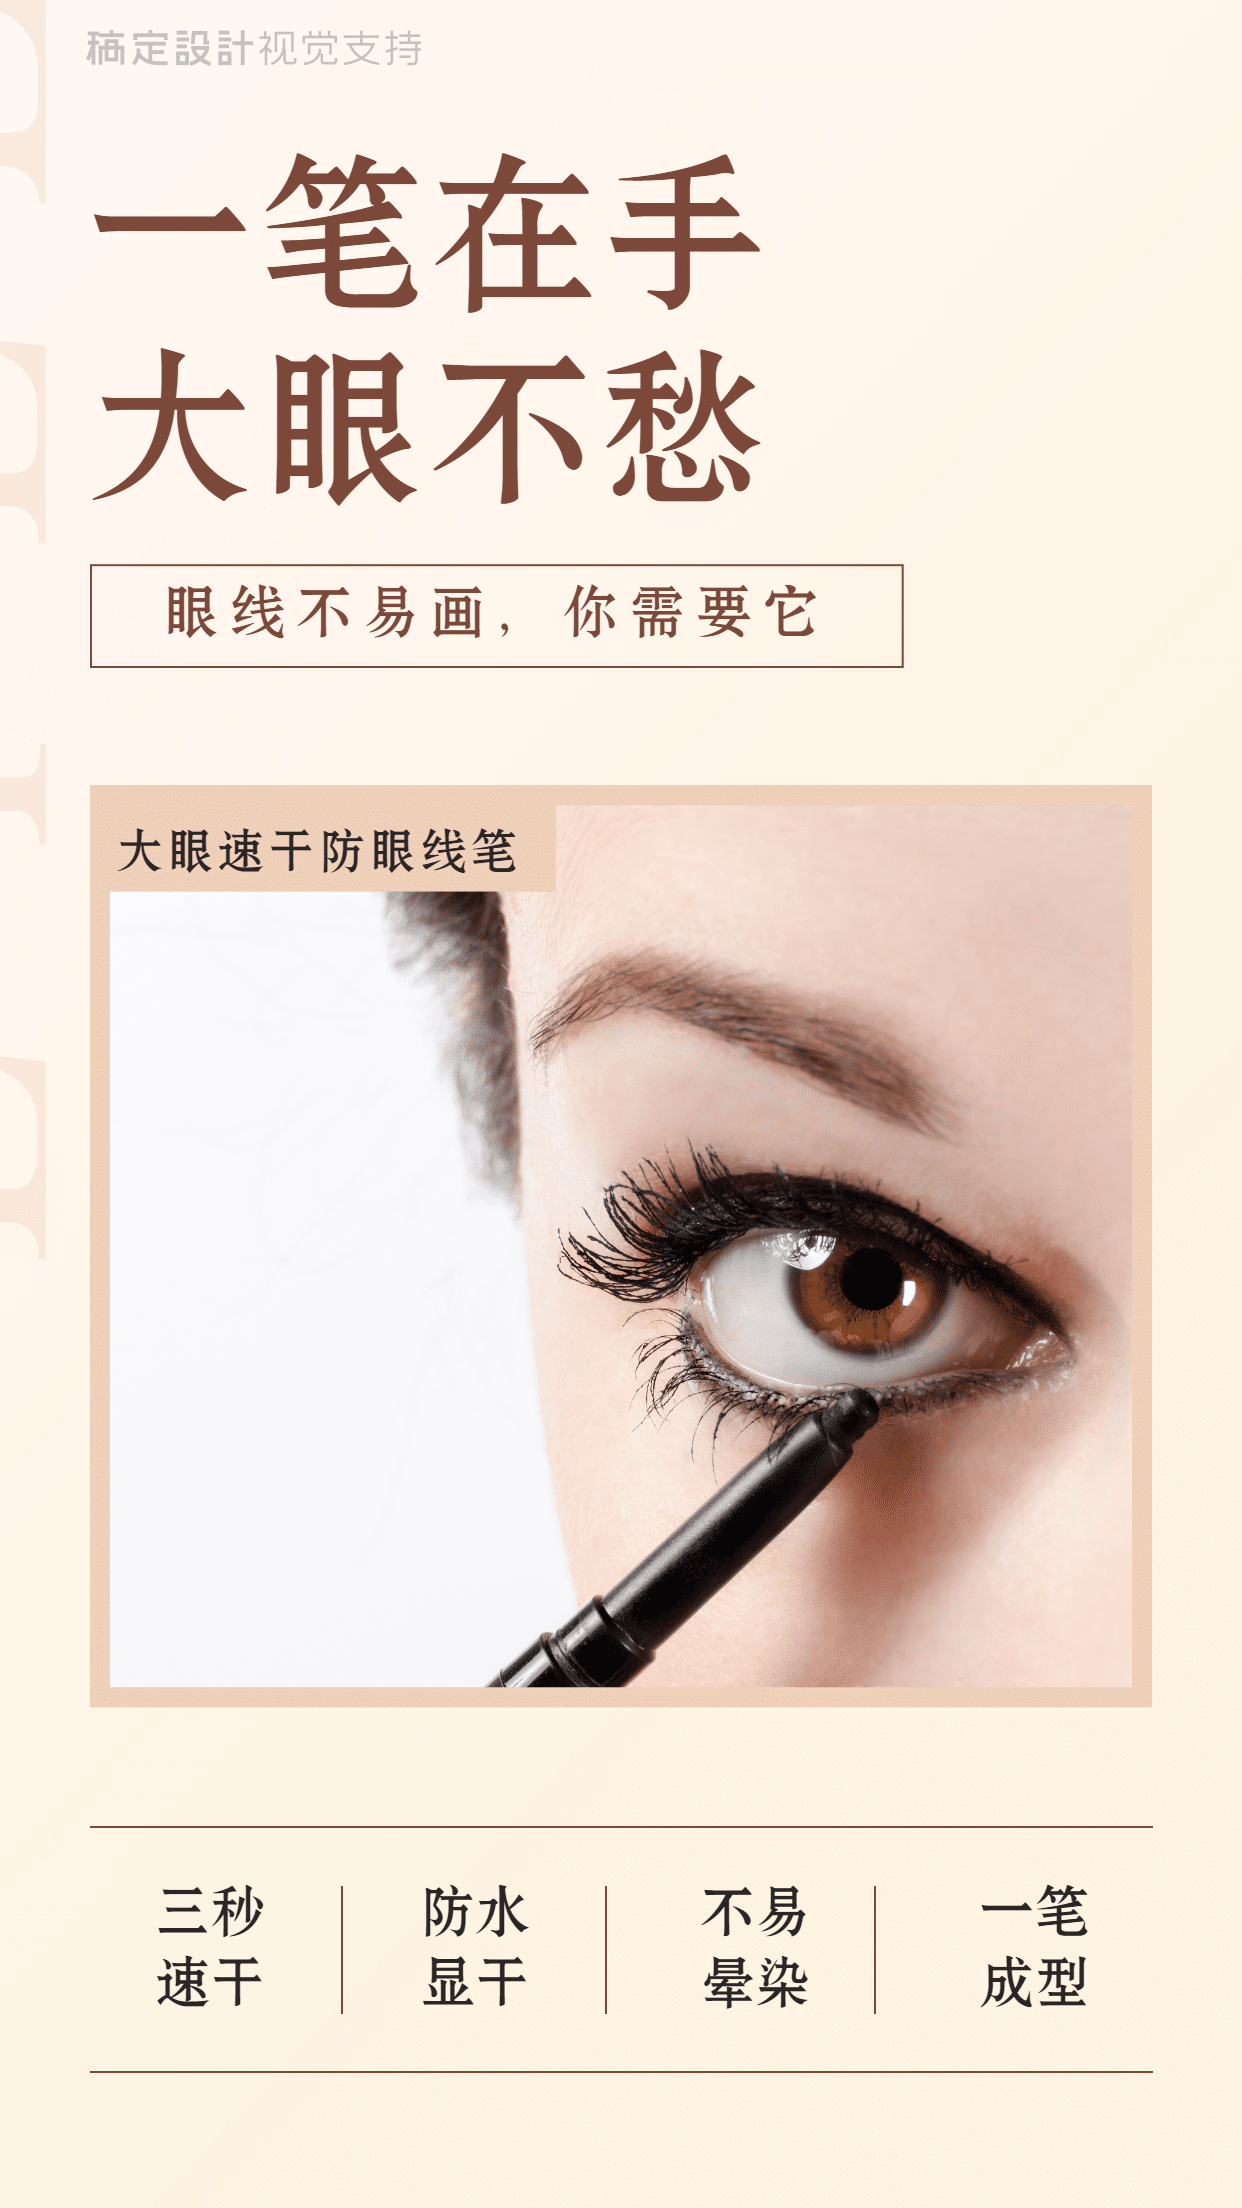 眼线美妆产品卖点介绍海报预览效果